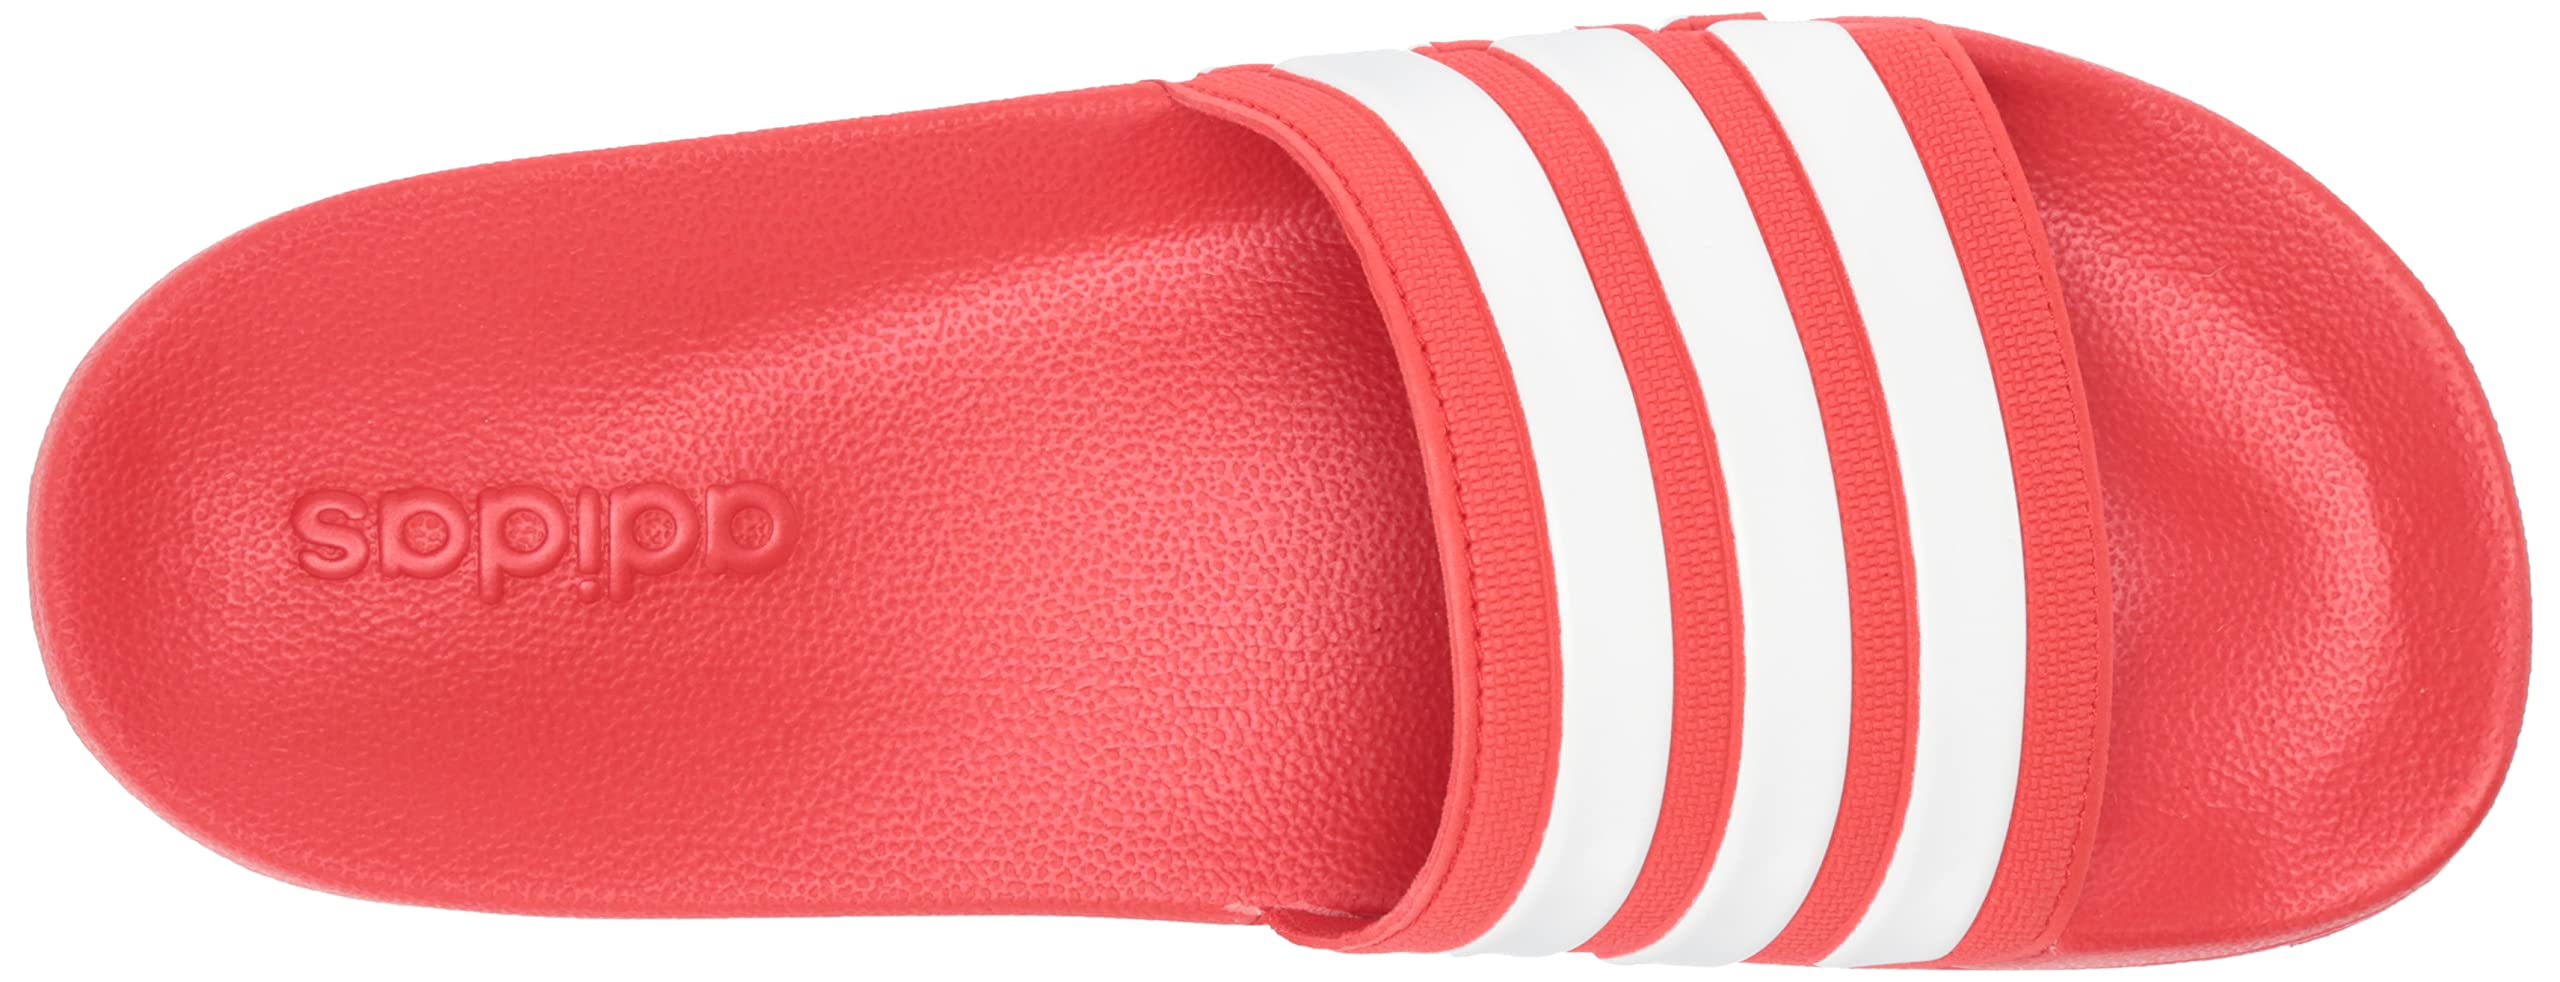 adidas Unisex-Adult Adilette Shower Slides Sandal